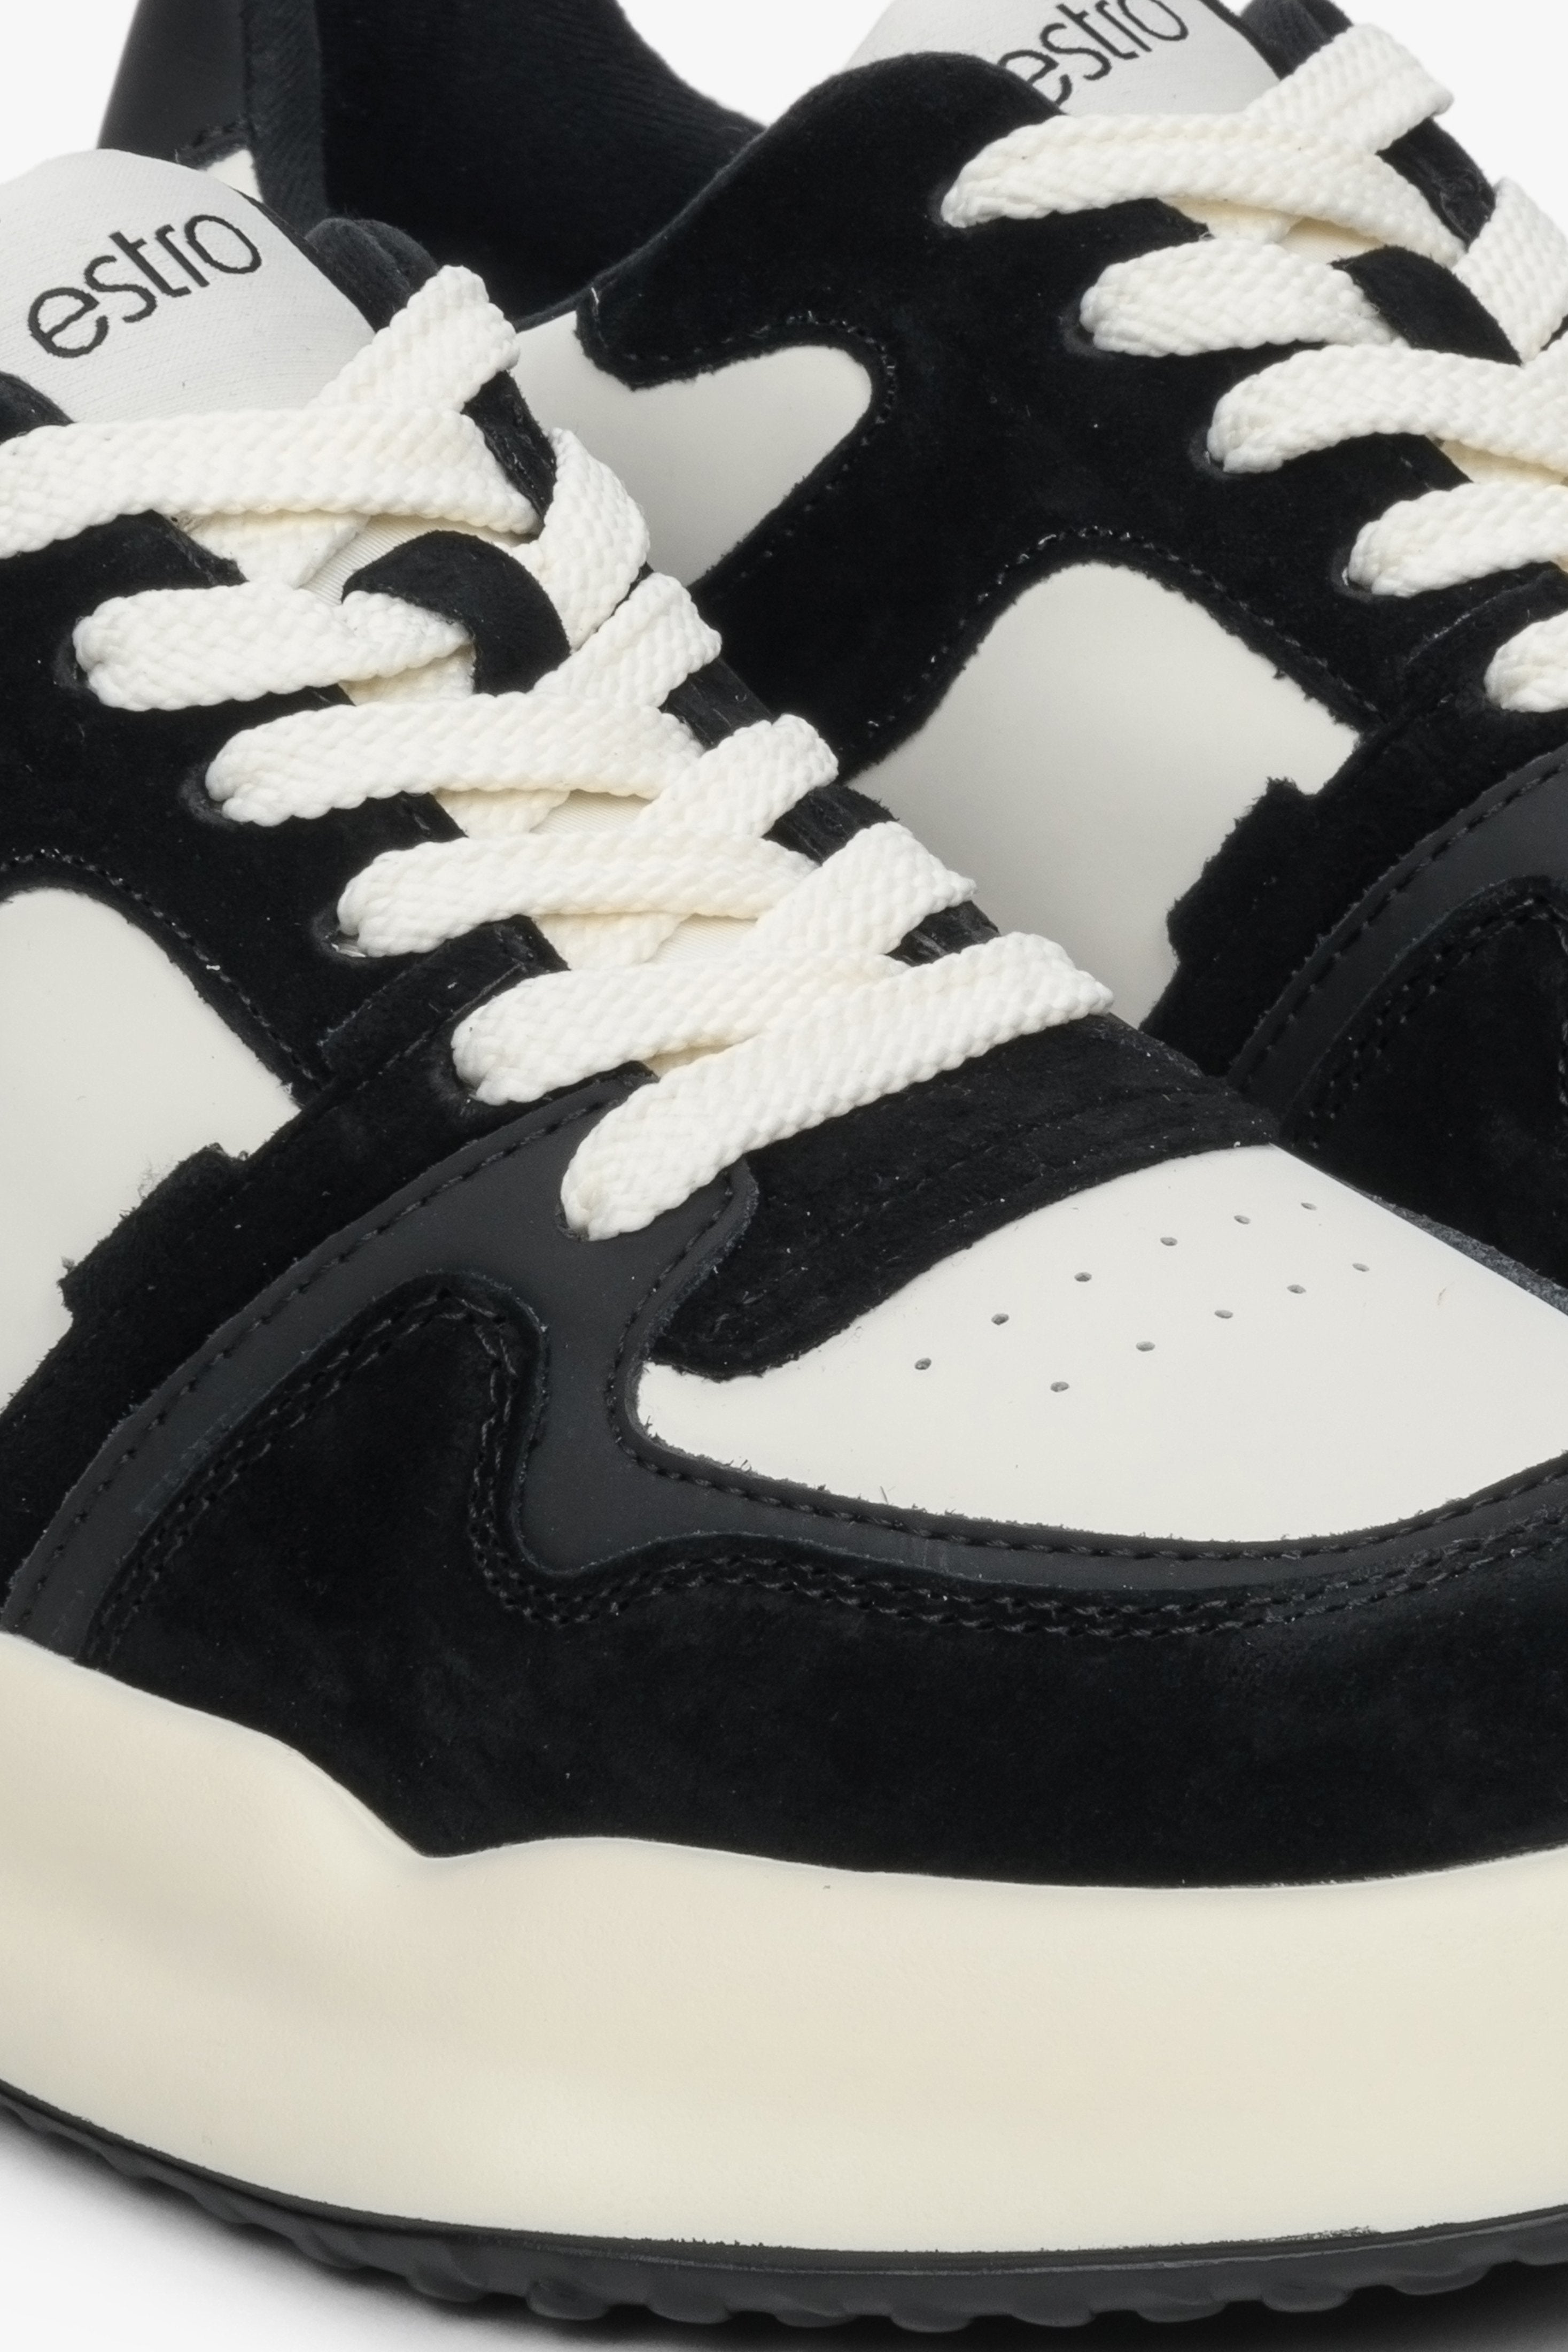 Sneakersy damskie z weluru i skóry naturalnej Estro - zbliżenie na detale w kolorze biało-czarnym.